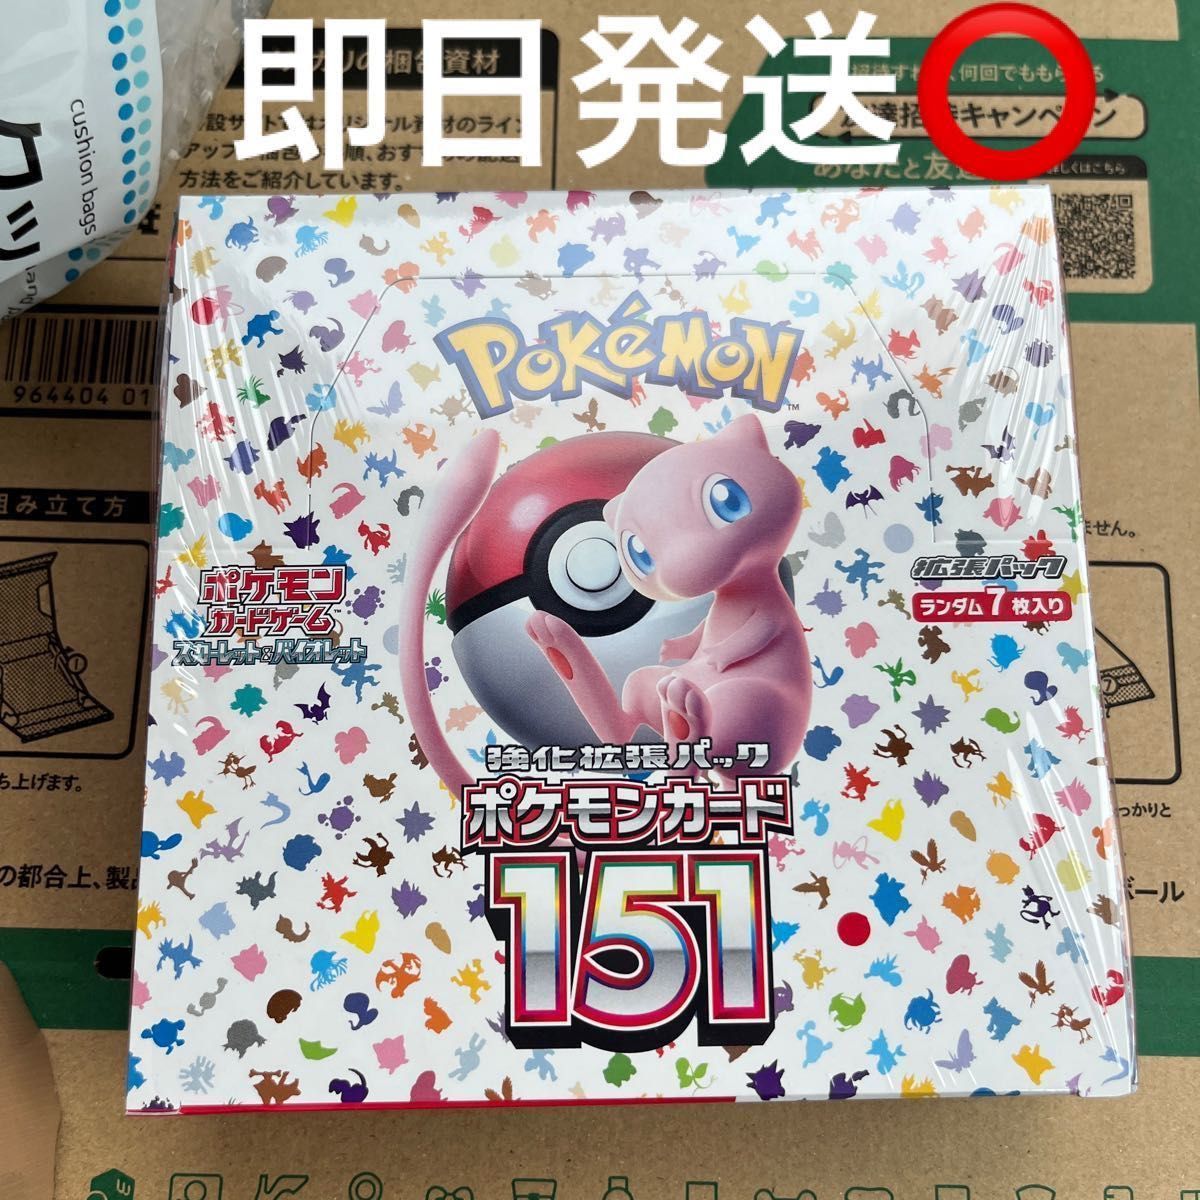 ポケモンカード151 シュリンク付き新品未開封BOX 9月12日購入 梱包画像 